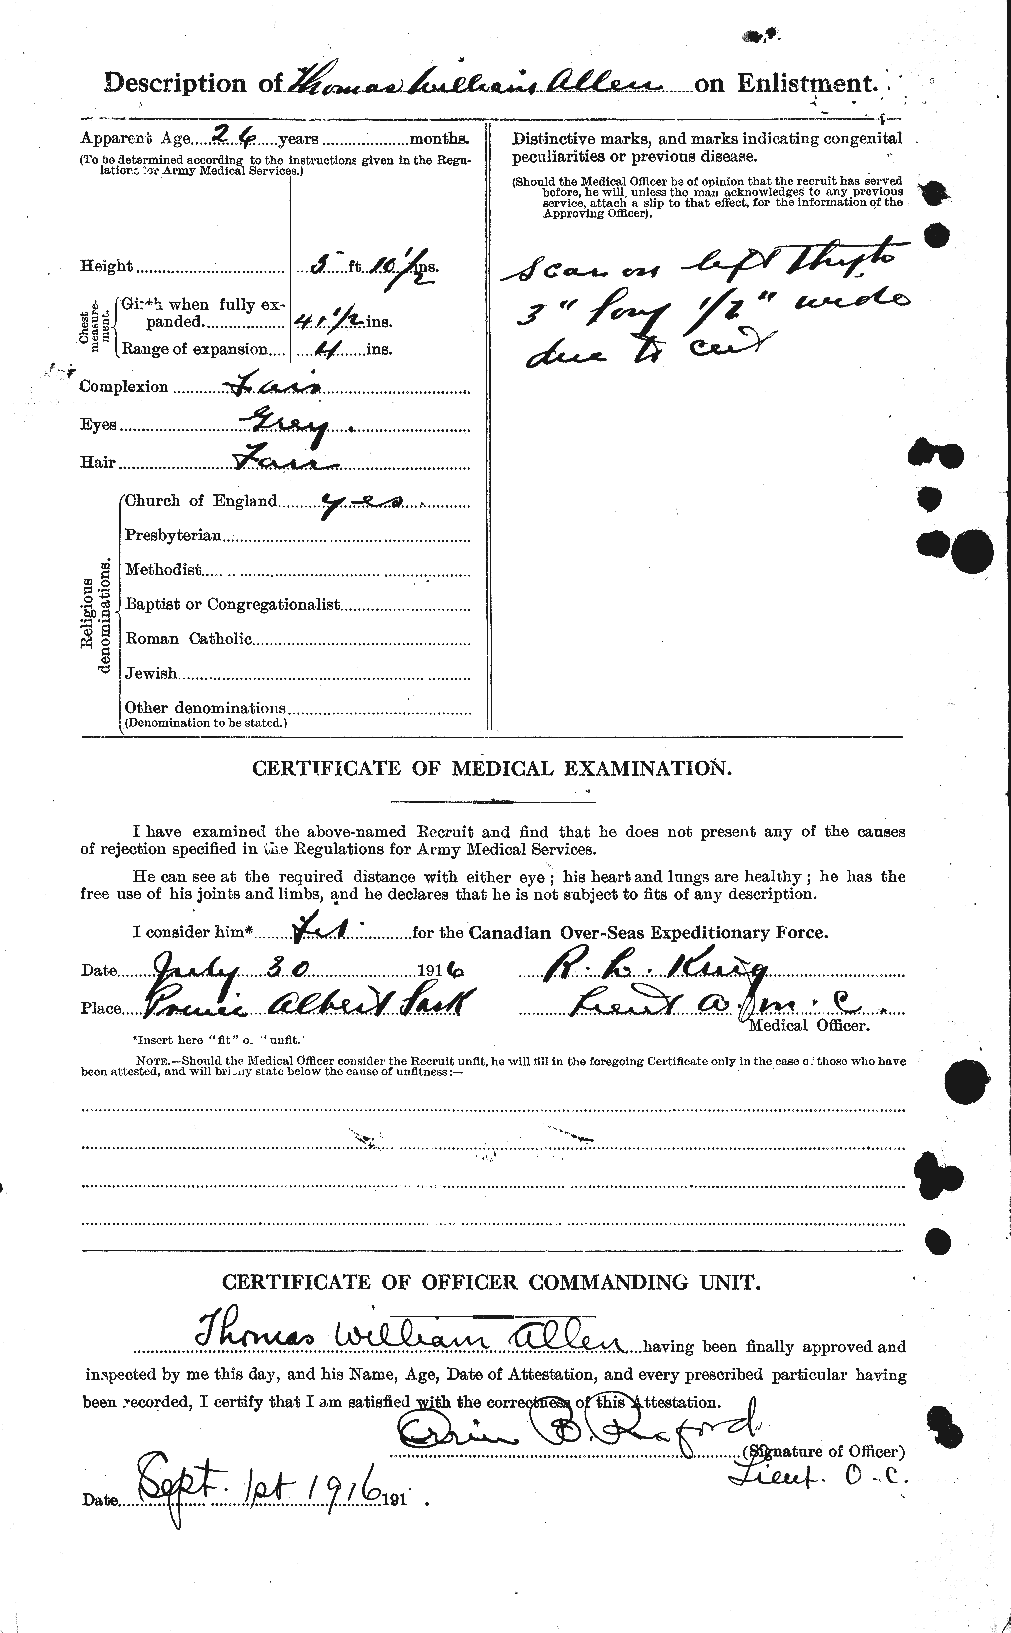 Dossiers du Personnel de la Première Guerre mondiale - CEC 206955b